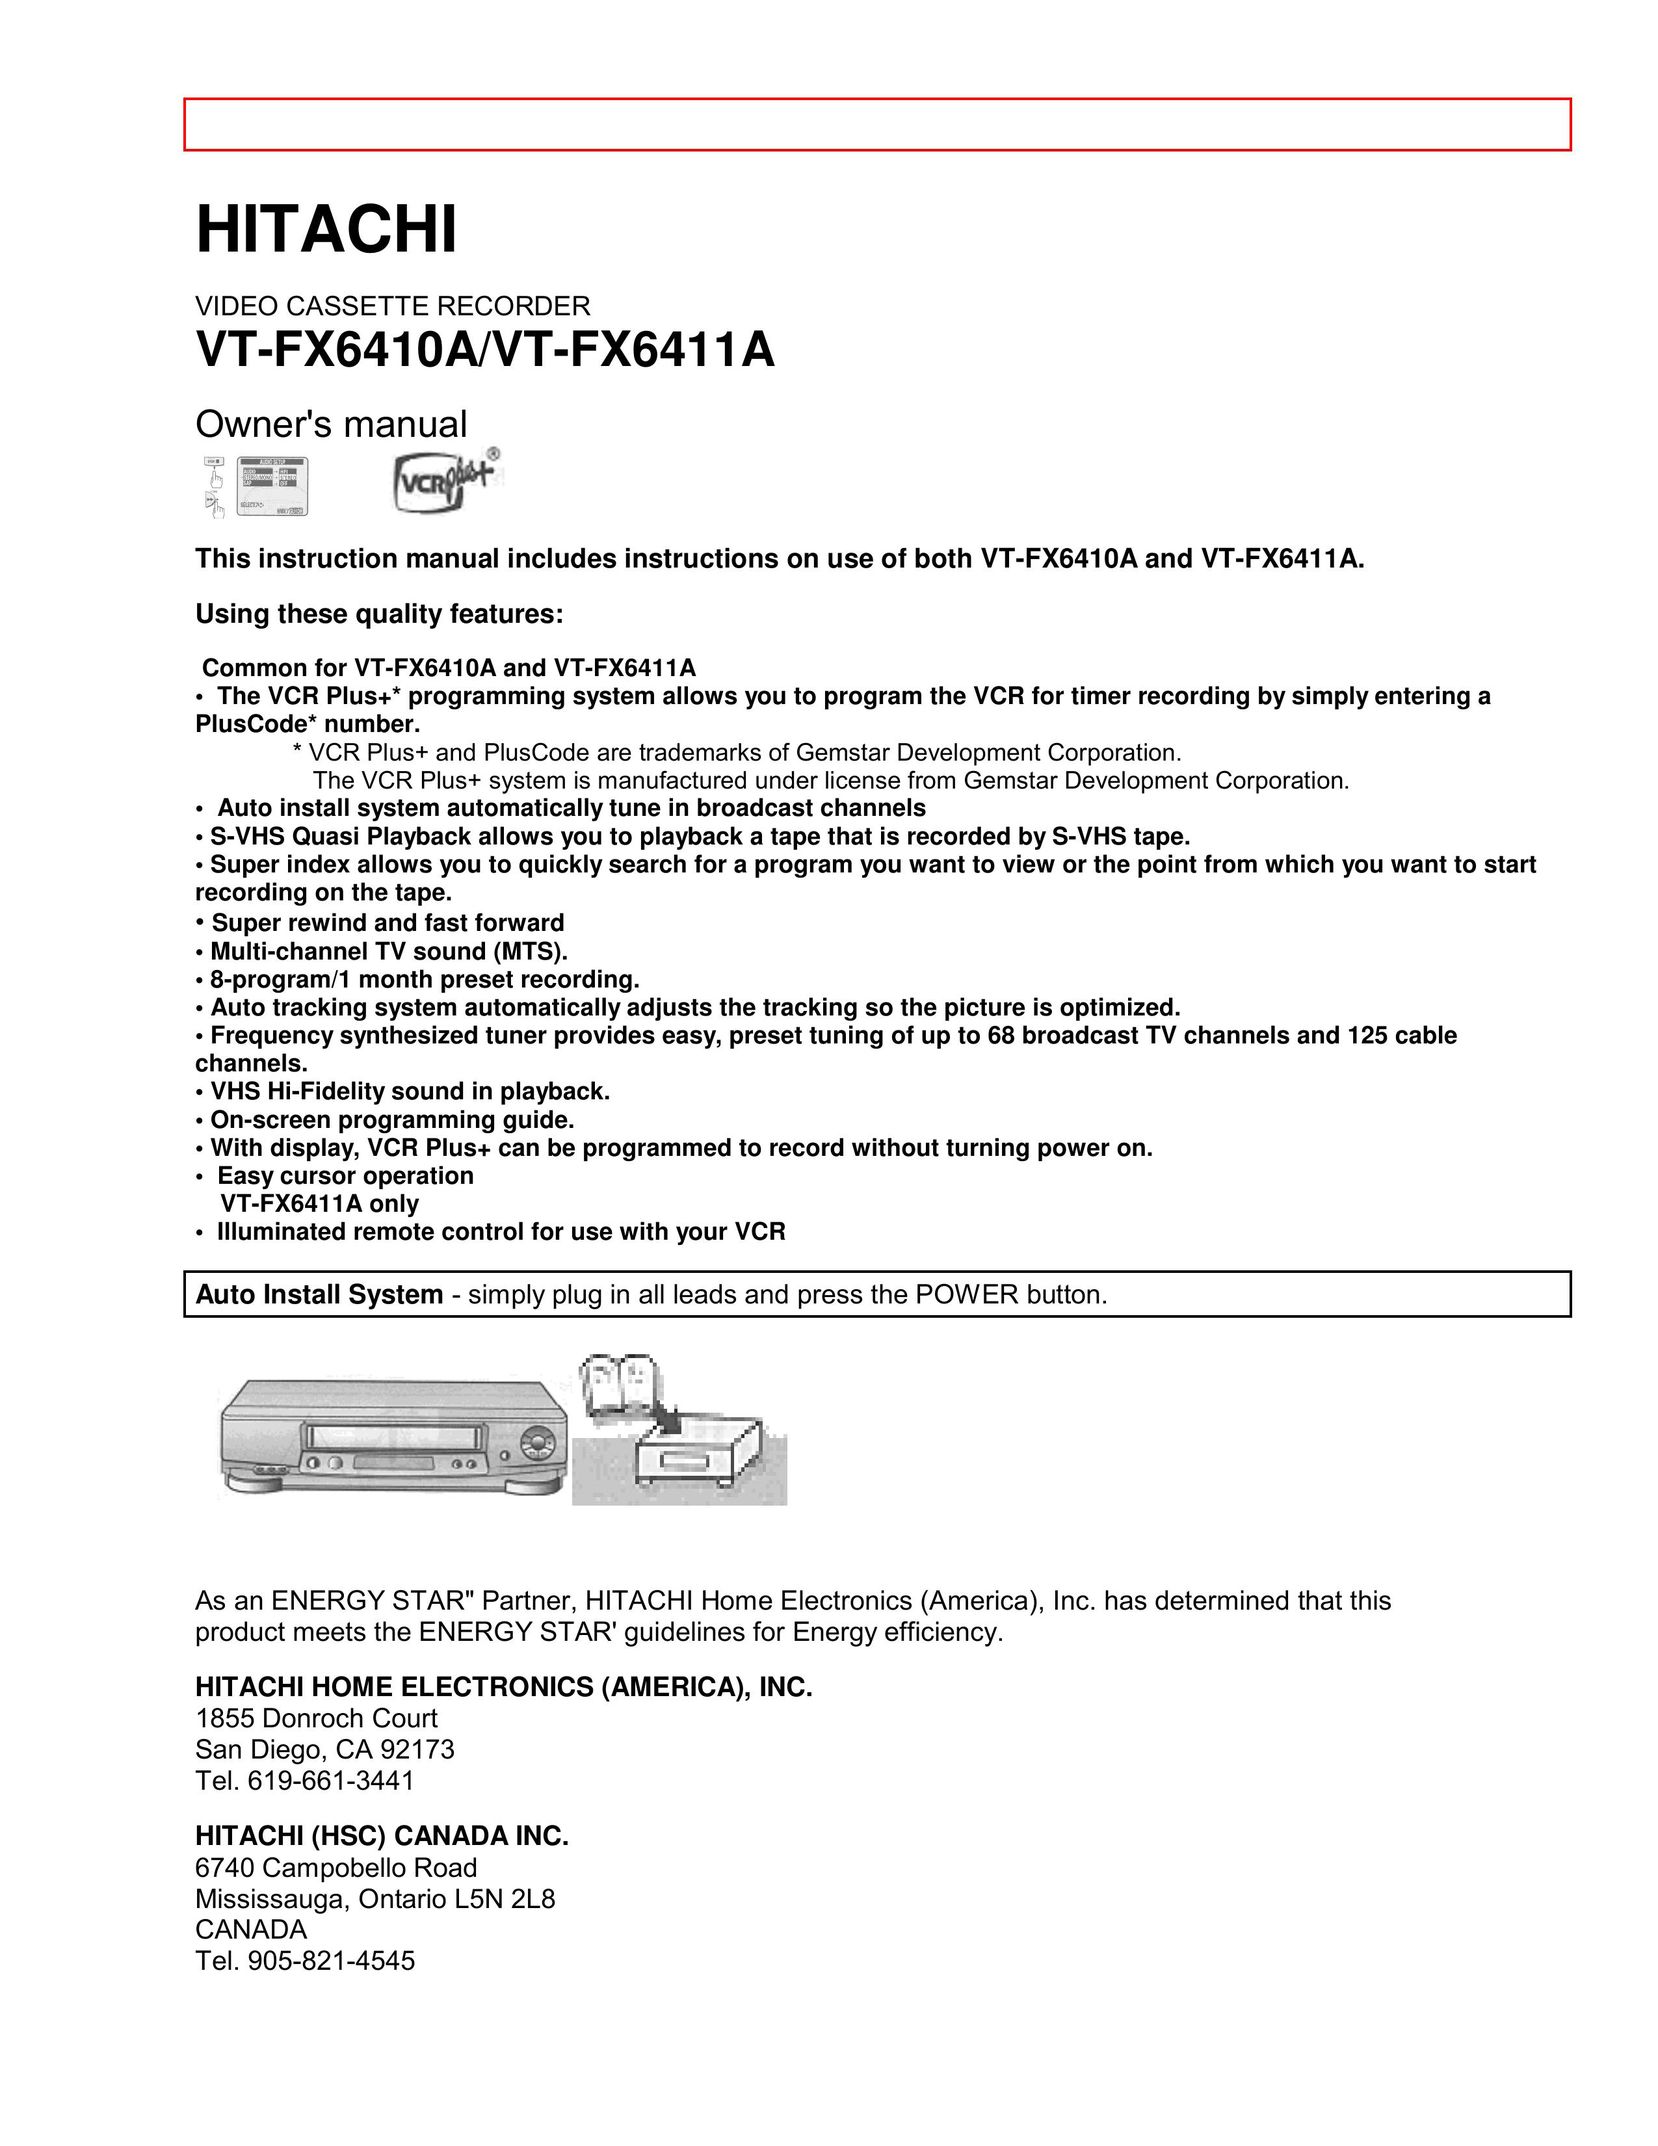 Hitachi VT-FX6411A VCR User Manual